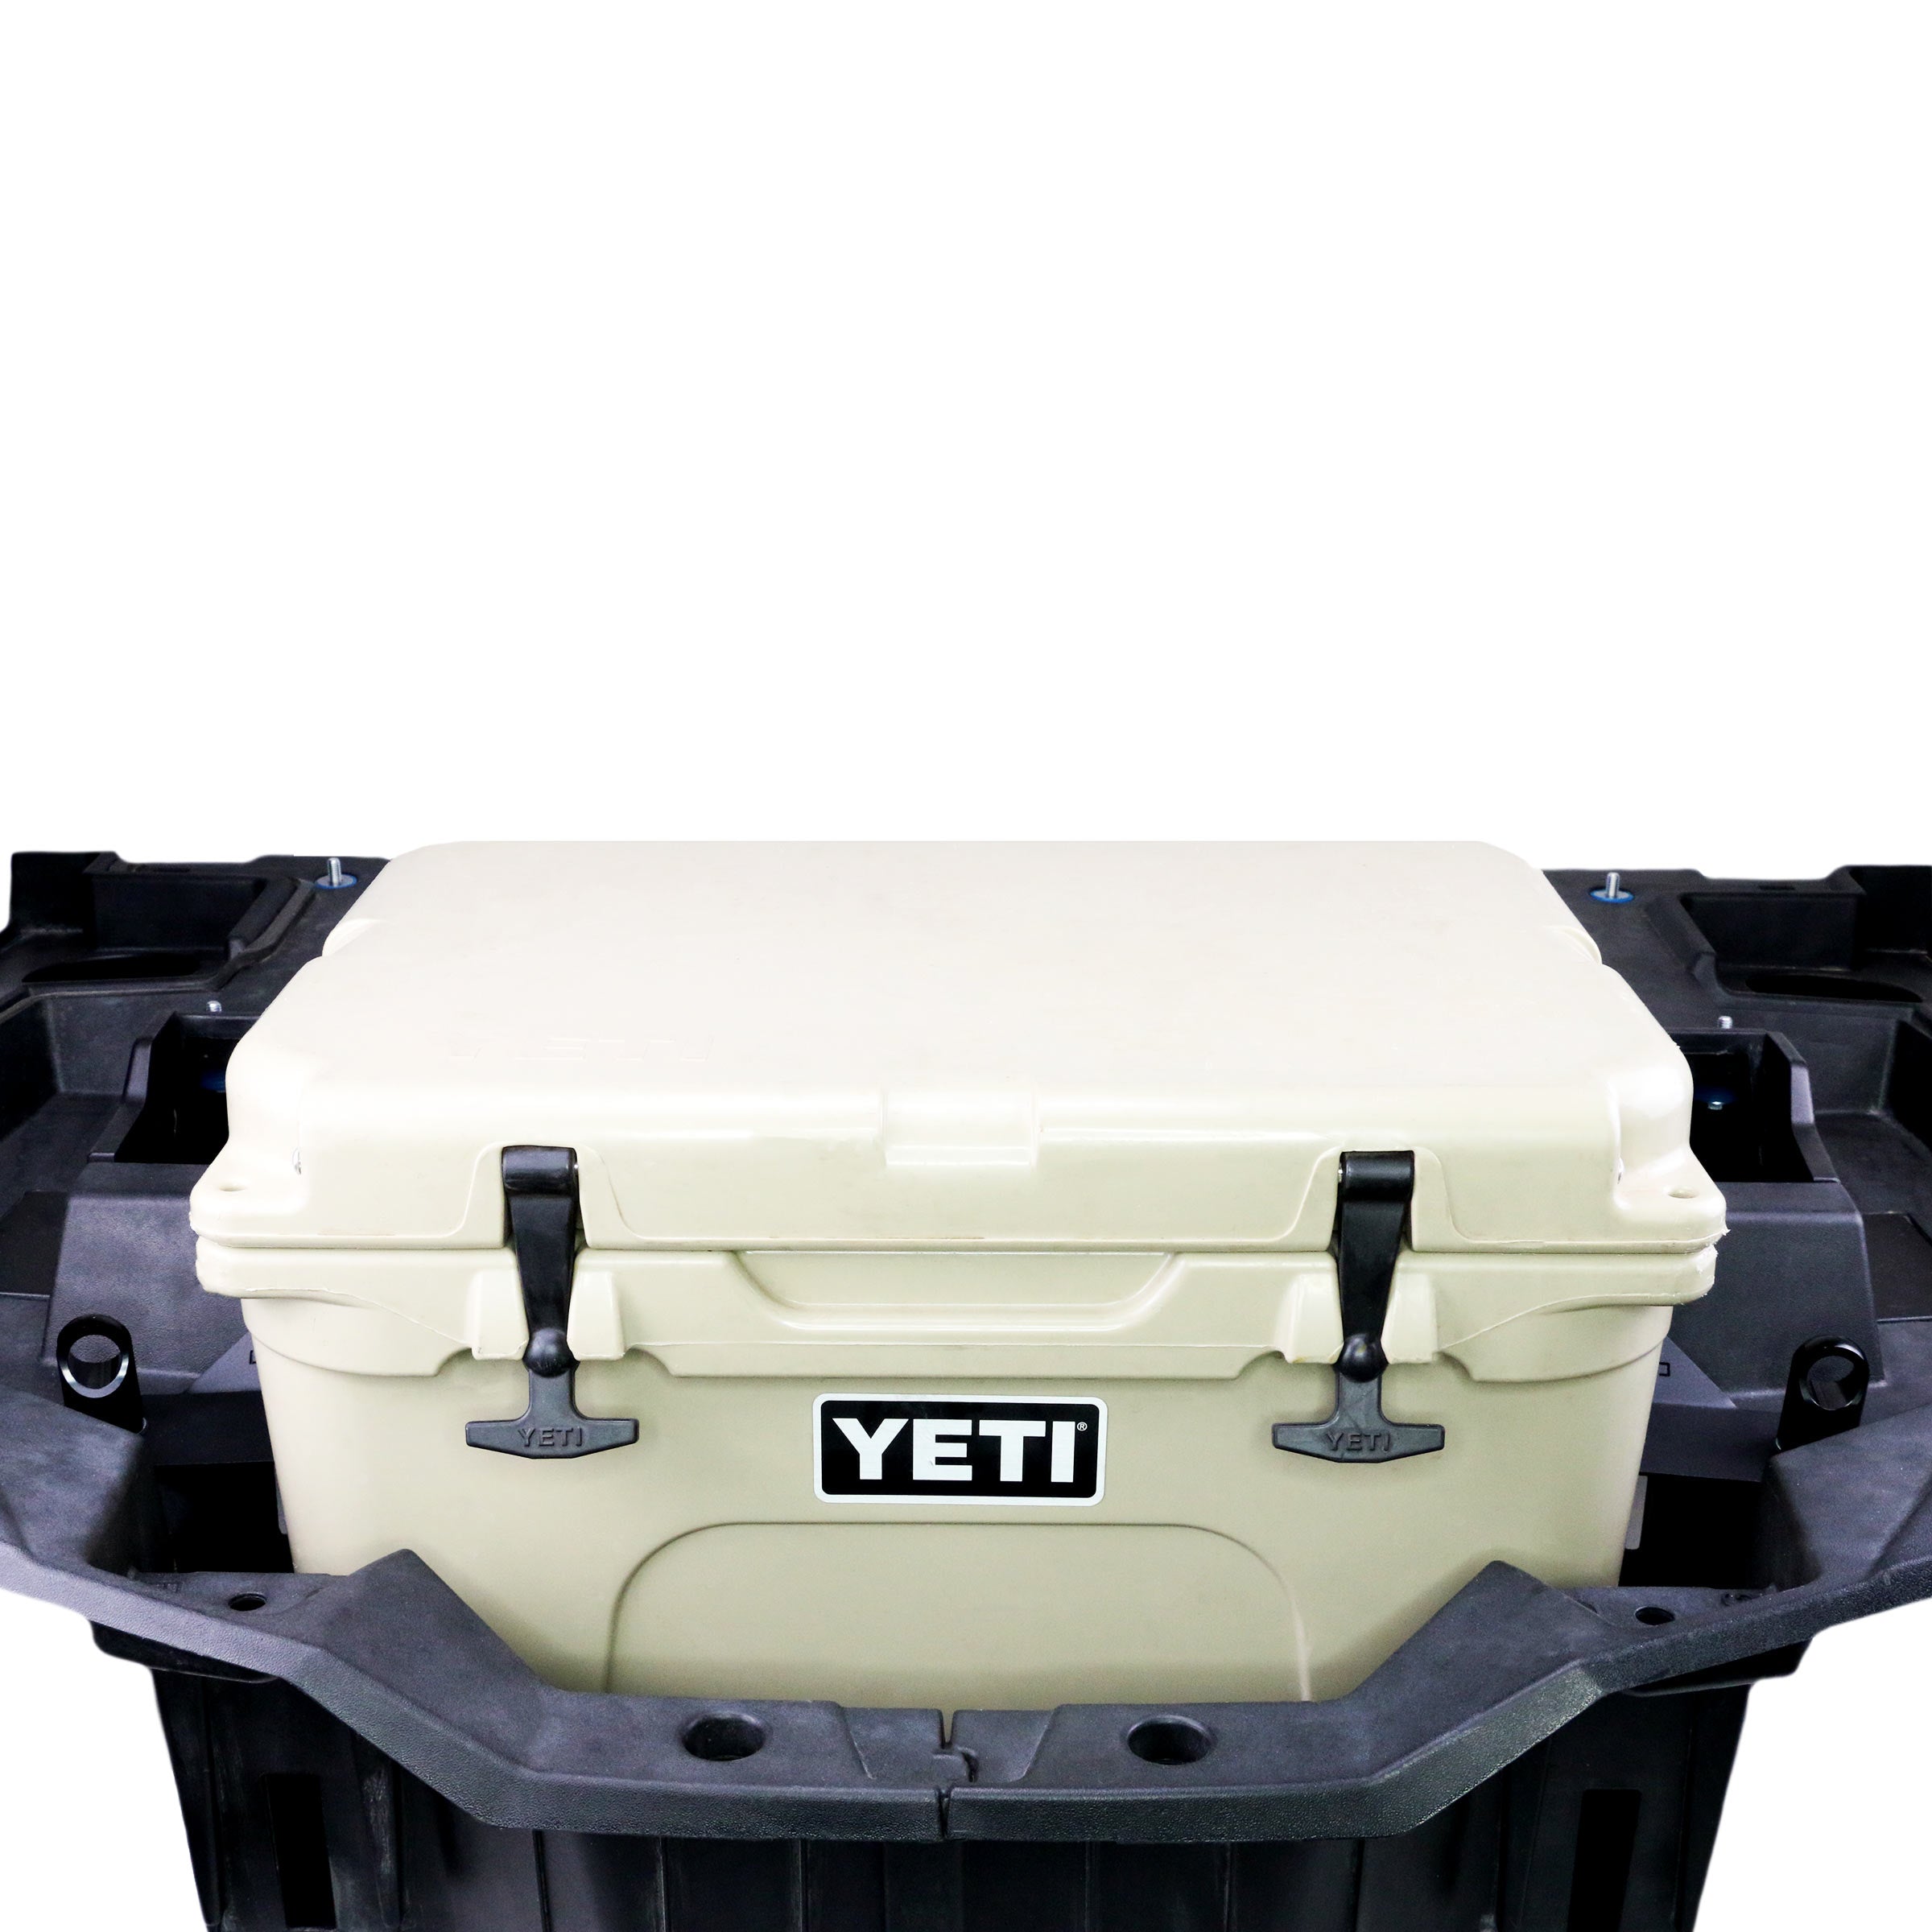 YETI Coolers - Tundra - 35 Quart - White